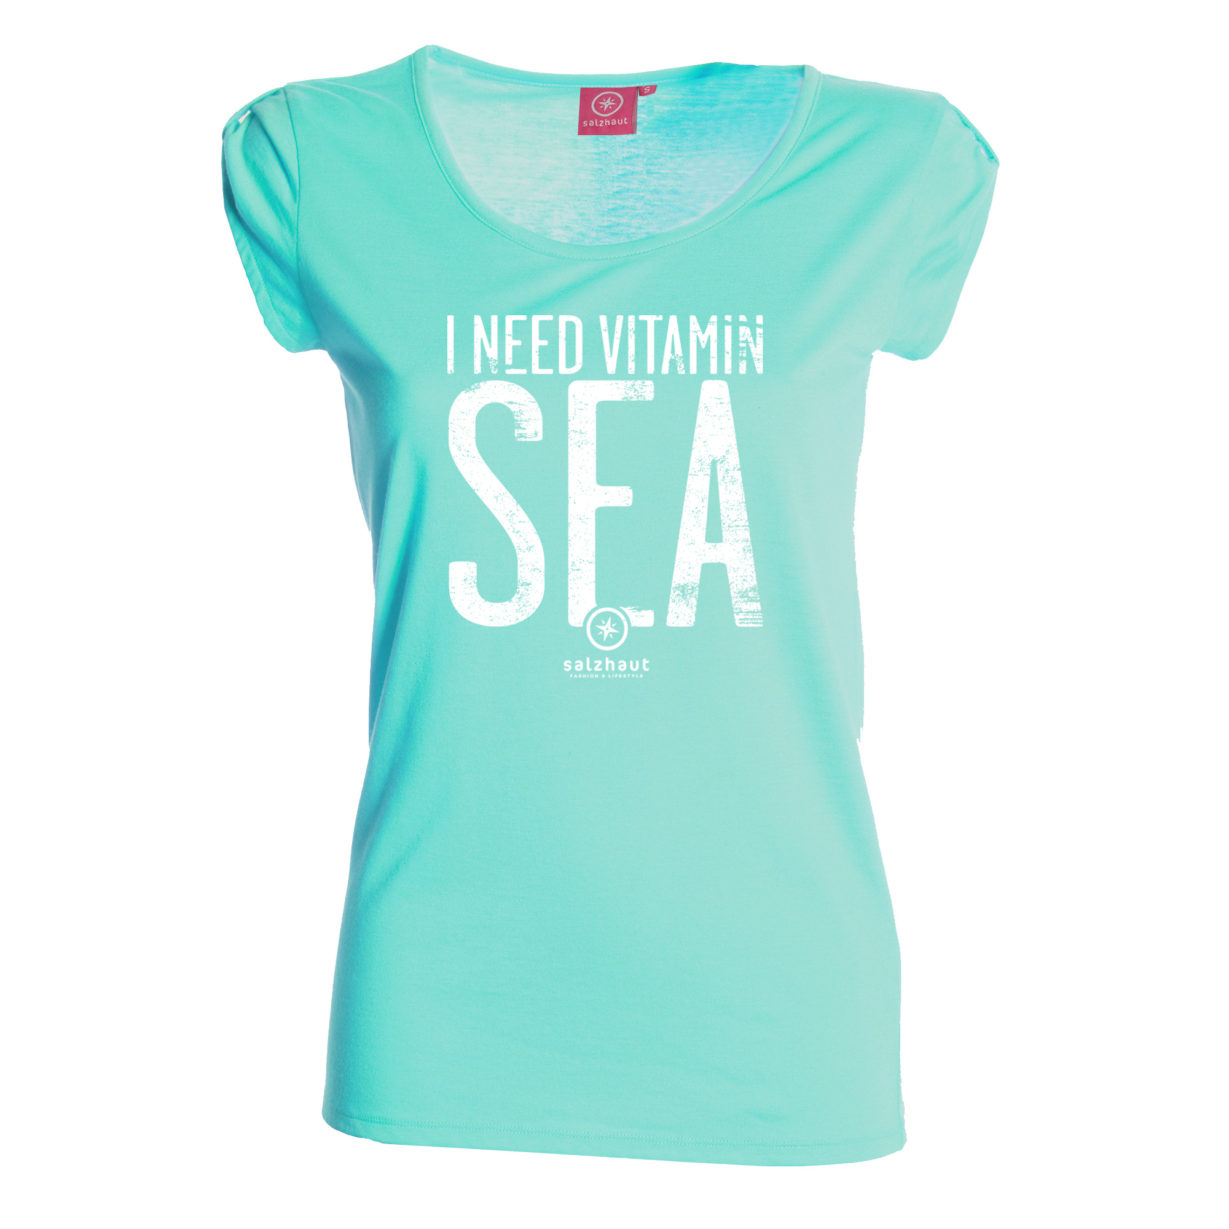 Biike T-Shirt mit Vitamin Sea in Aqua